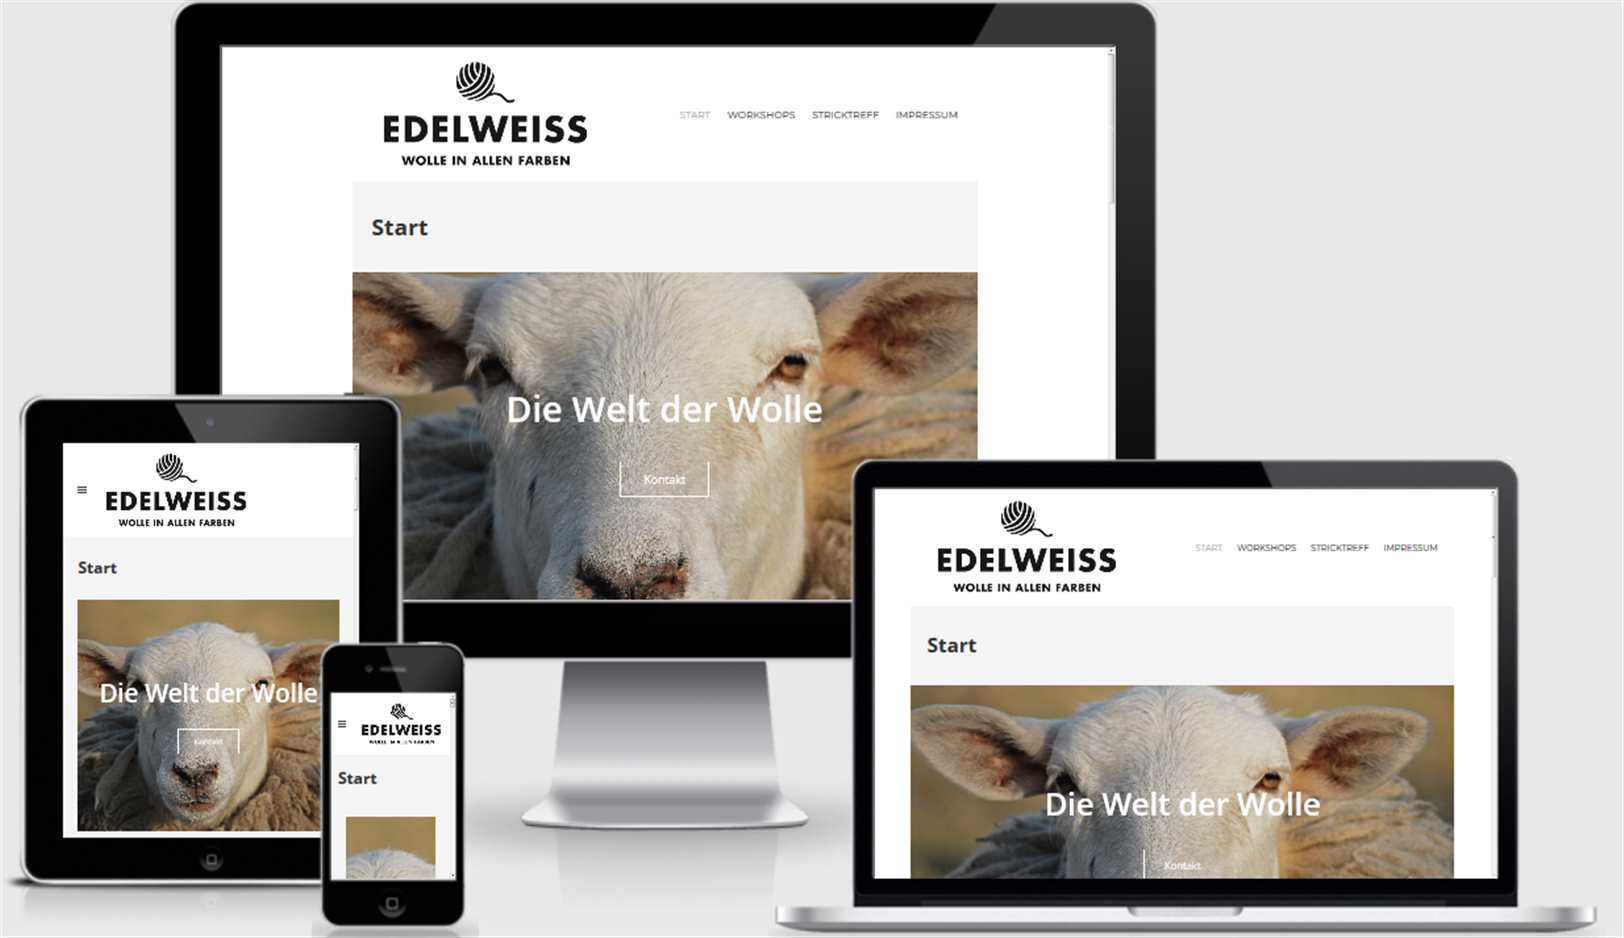 webdesign_referenz-edelweiss